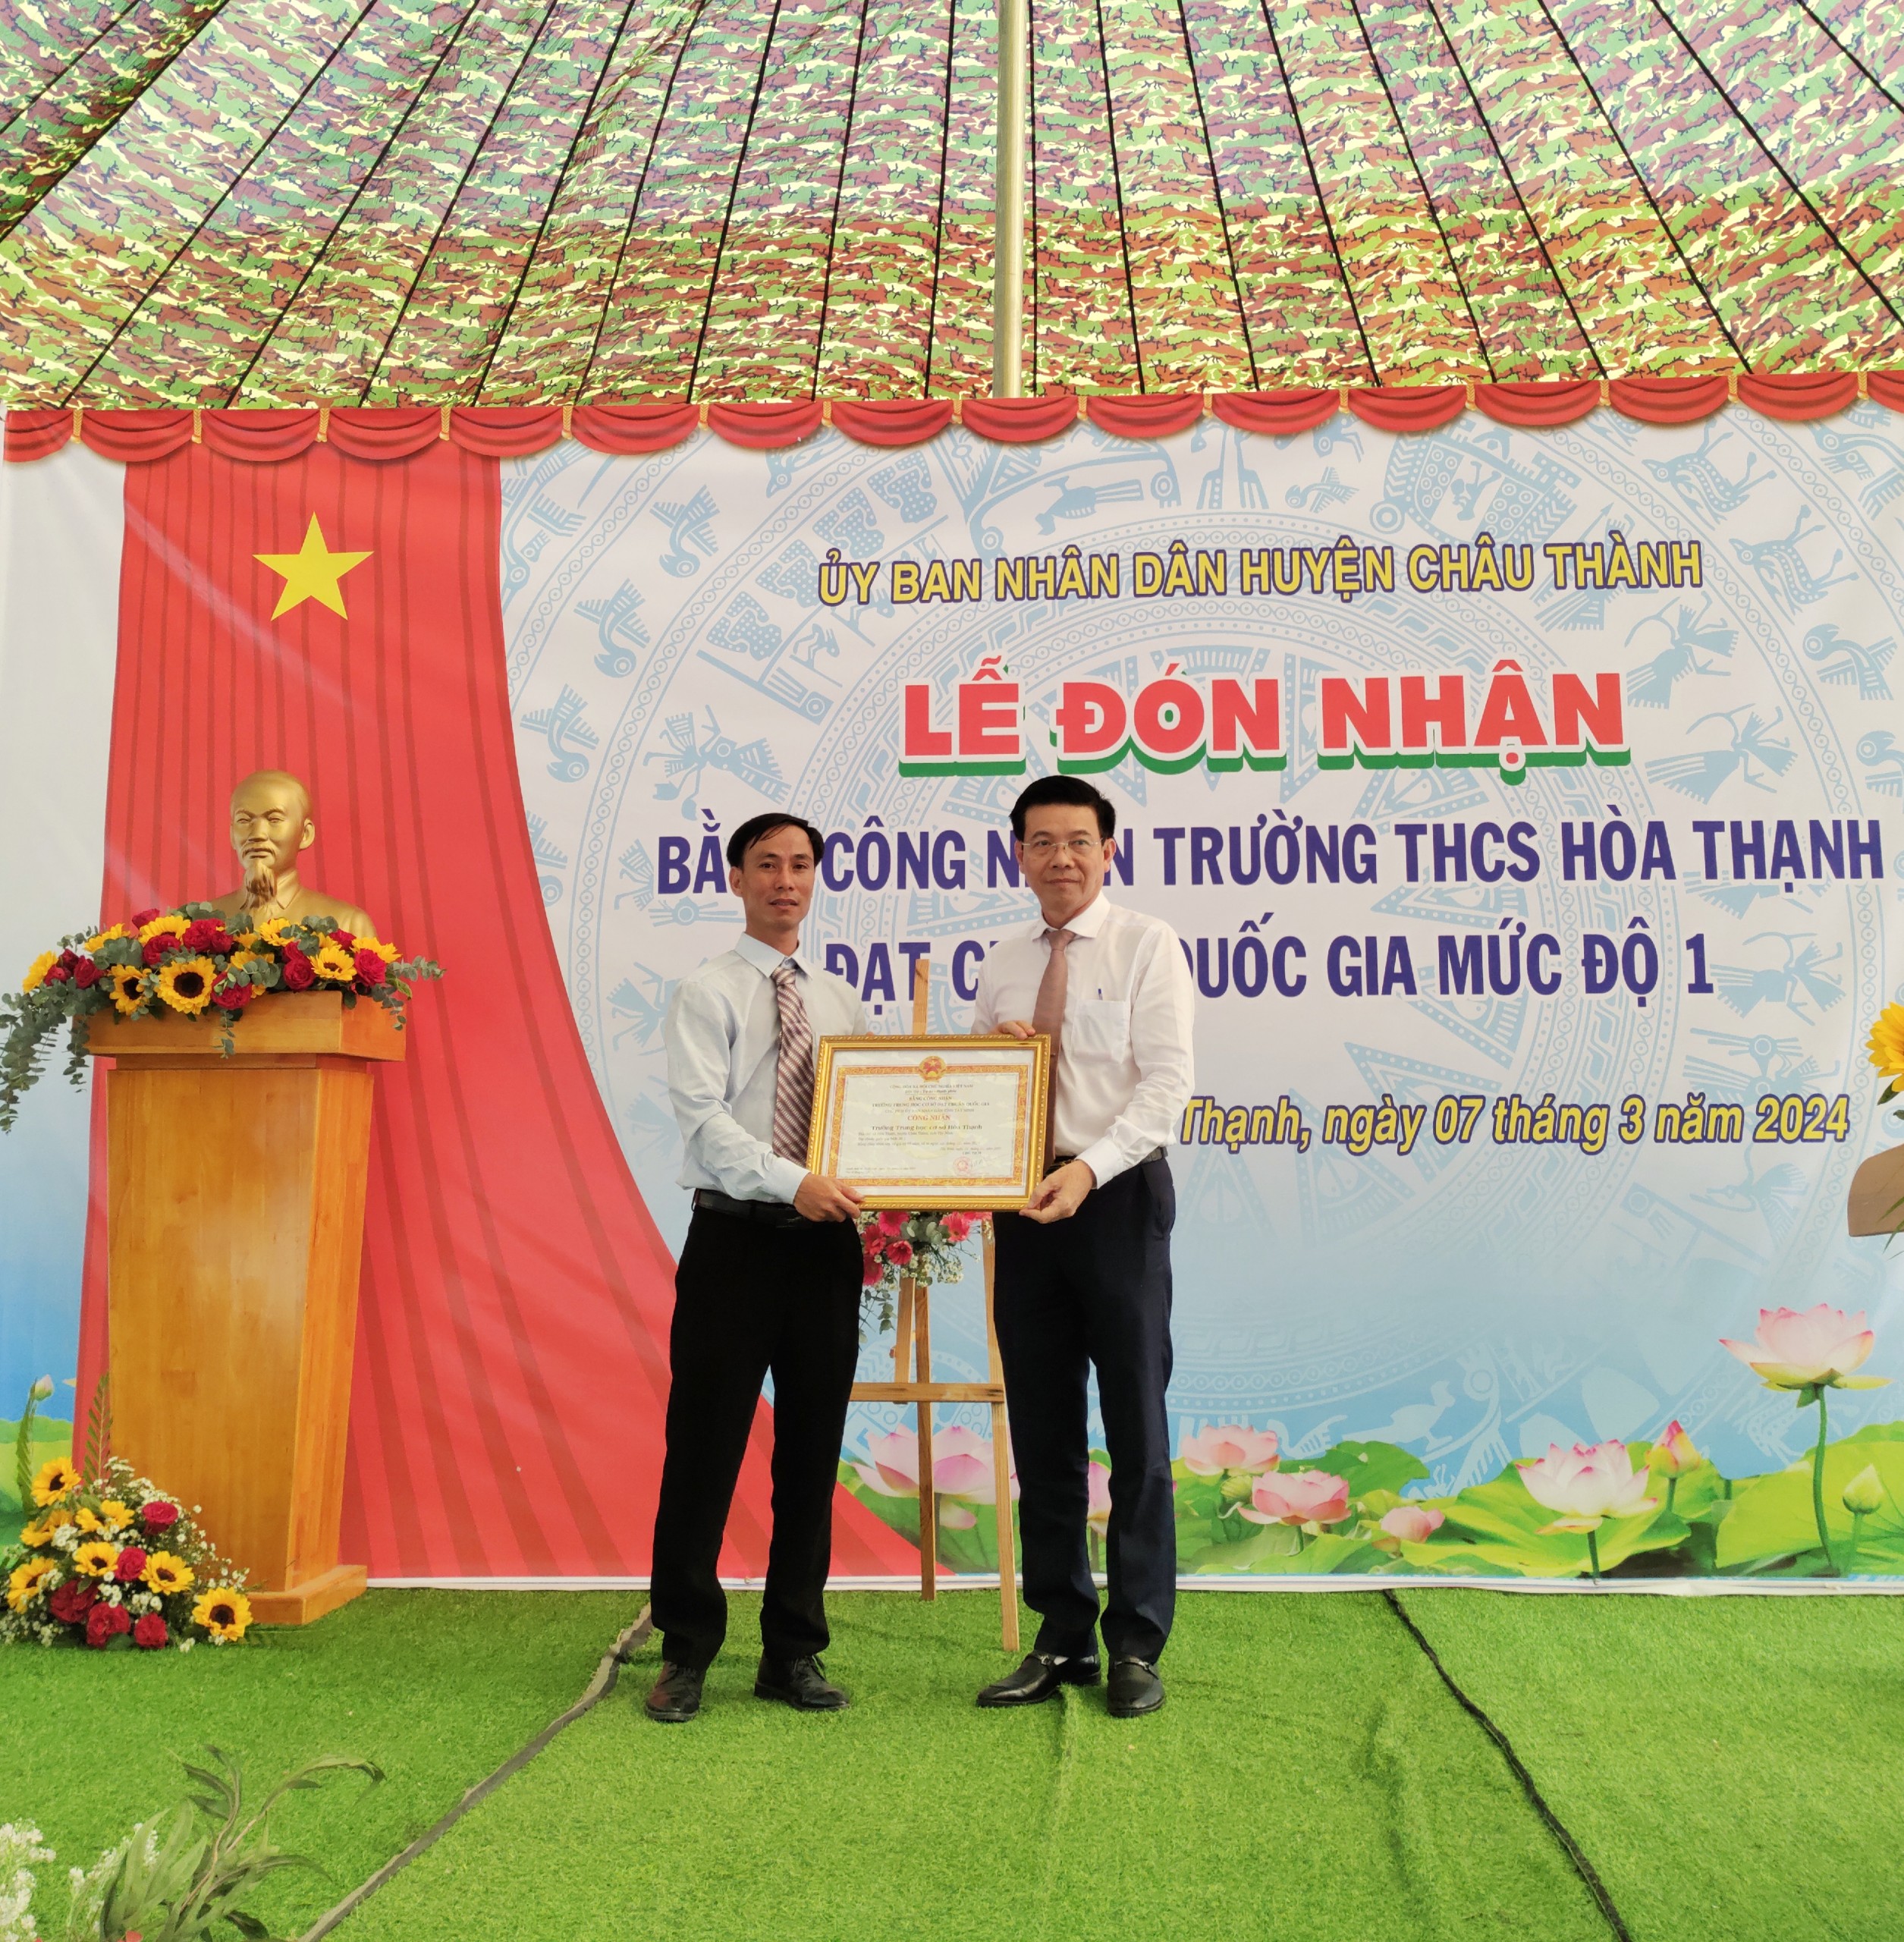 Đồng chí Nguyễn Văn Phước – Giám đốc Sở Giáo dục & Đào tạo tỉnh Tây Ninh đã trao Bằng công nhận Trường đạt chuẩn Quốc gia mức độ 1 cho tập thể Trường THCS Hoà Thạnh, huyện Châu Thành.